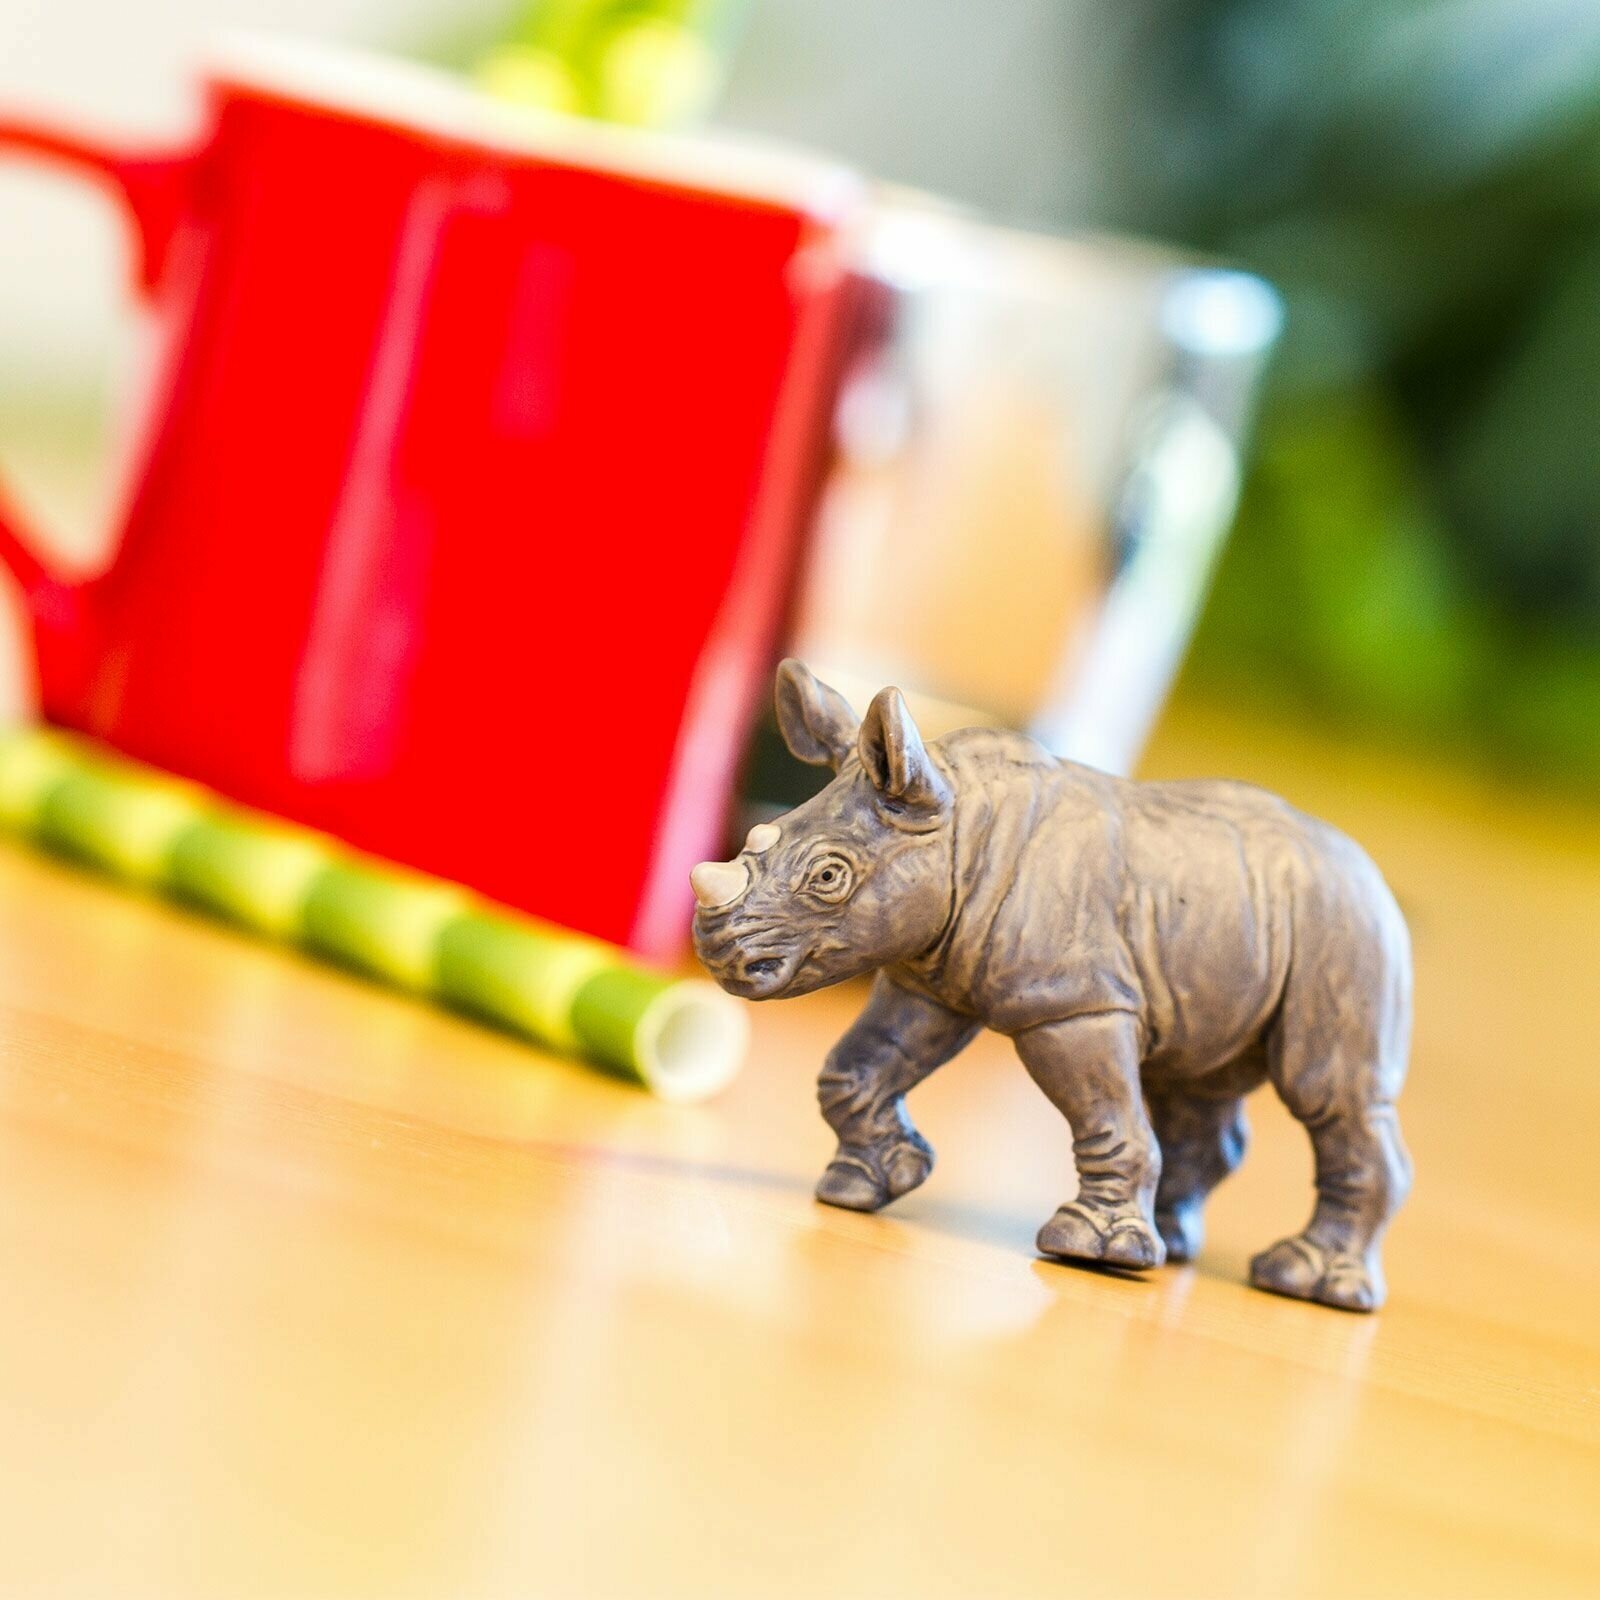 Фигурка животного Safari Ltd Белый носорог (детеныш), для детей, игрушка коллекционная, 270329